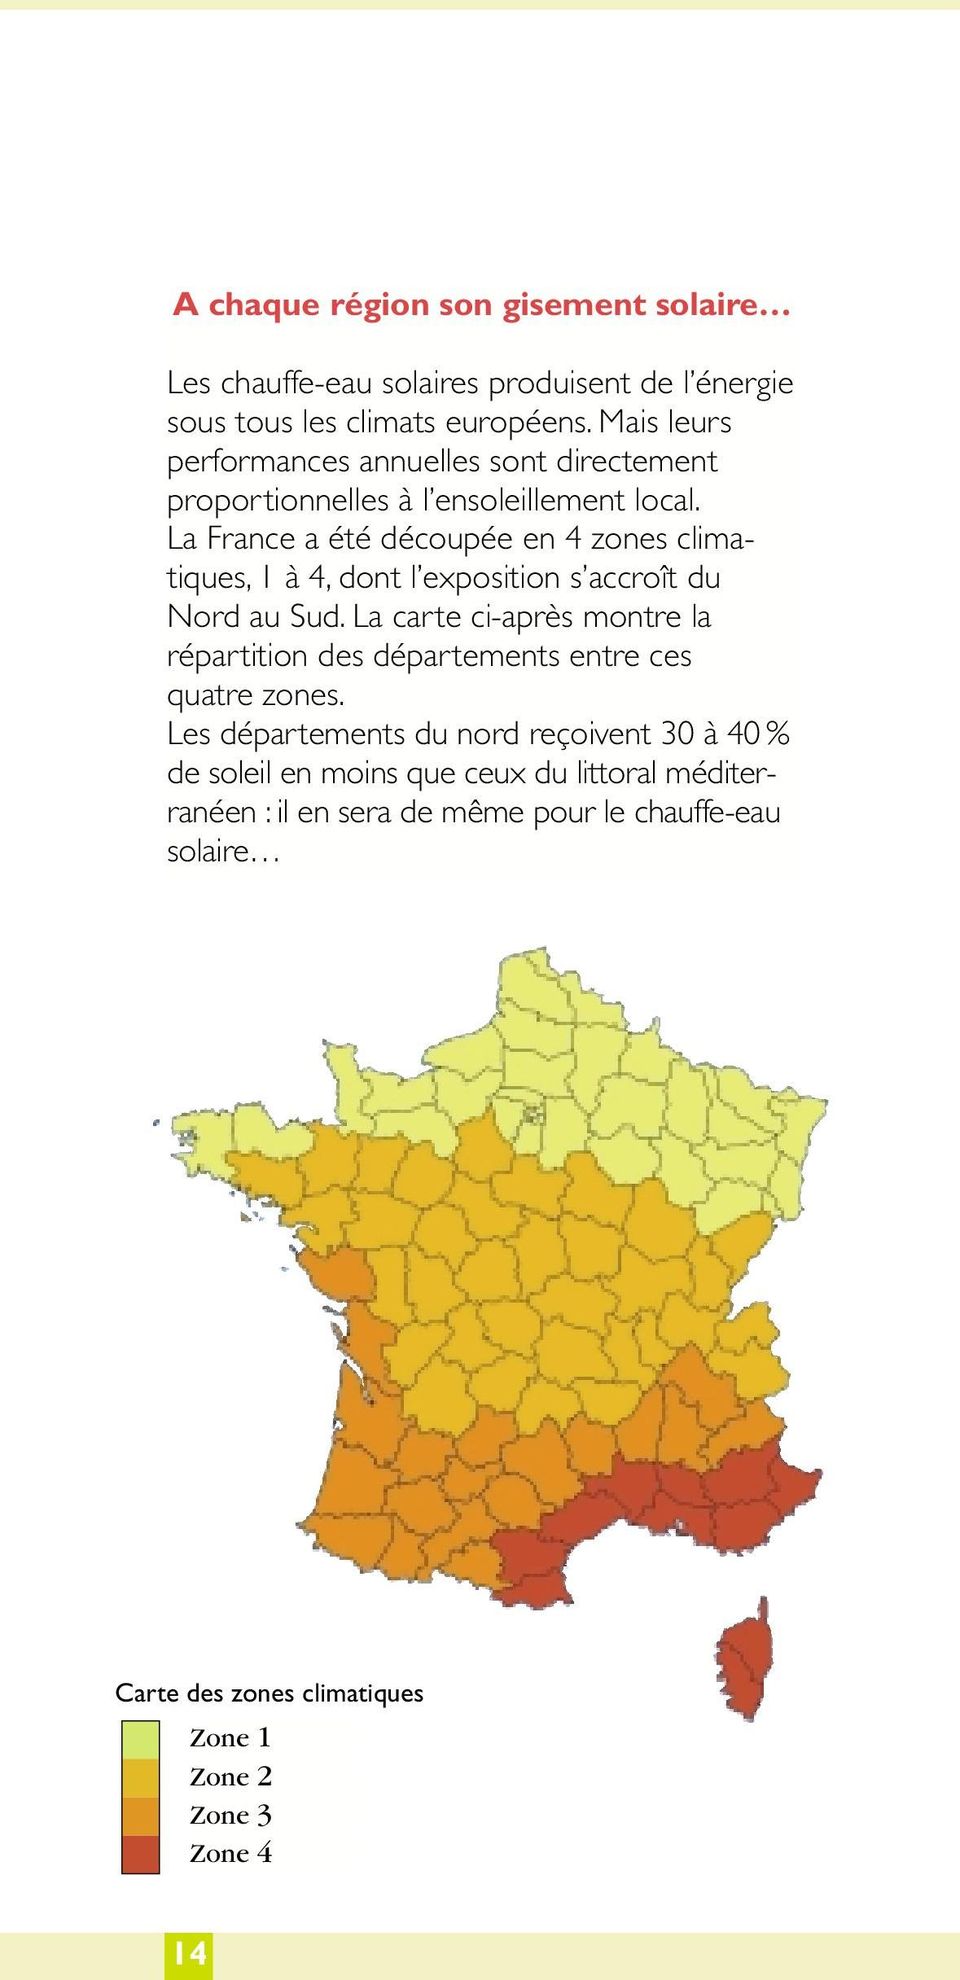 La France a été découpée en 4 zones climatiques, 1 à 4, dont l exposition s accroît du Nord au Sud.